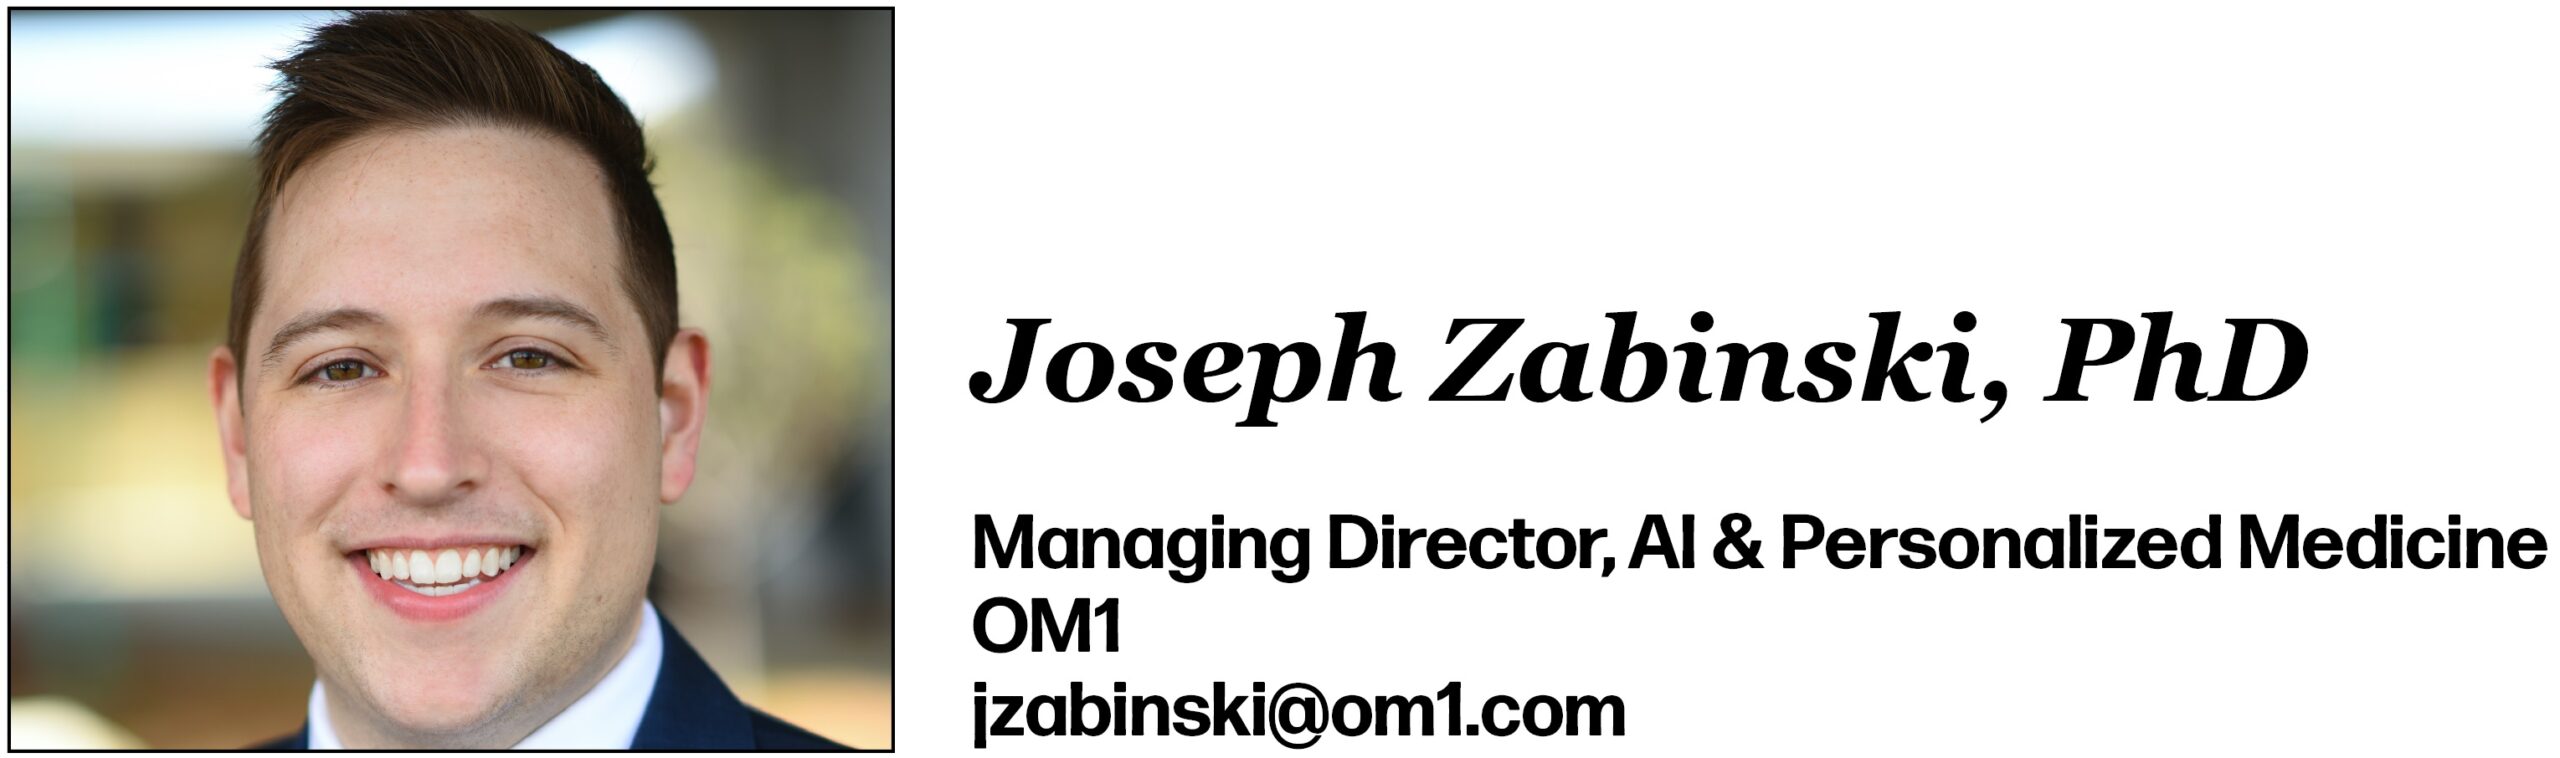 Joseph Zabinski, PhD Managing Director, AI & Personalized Medicine OM1 jzabinski@om1.com